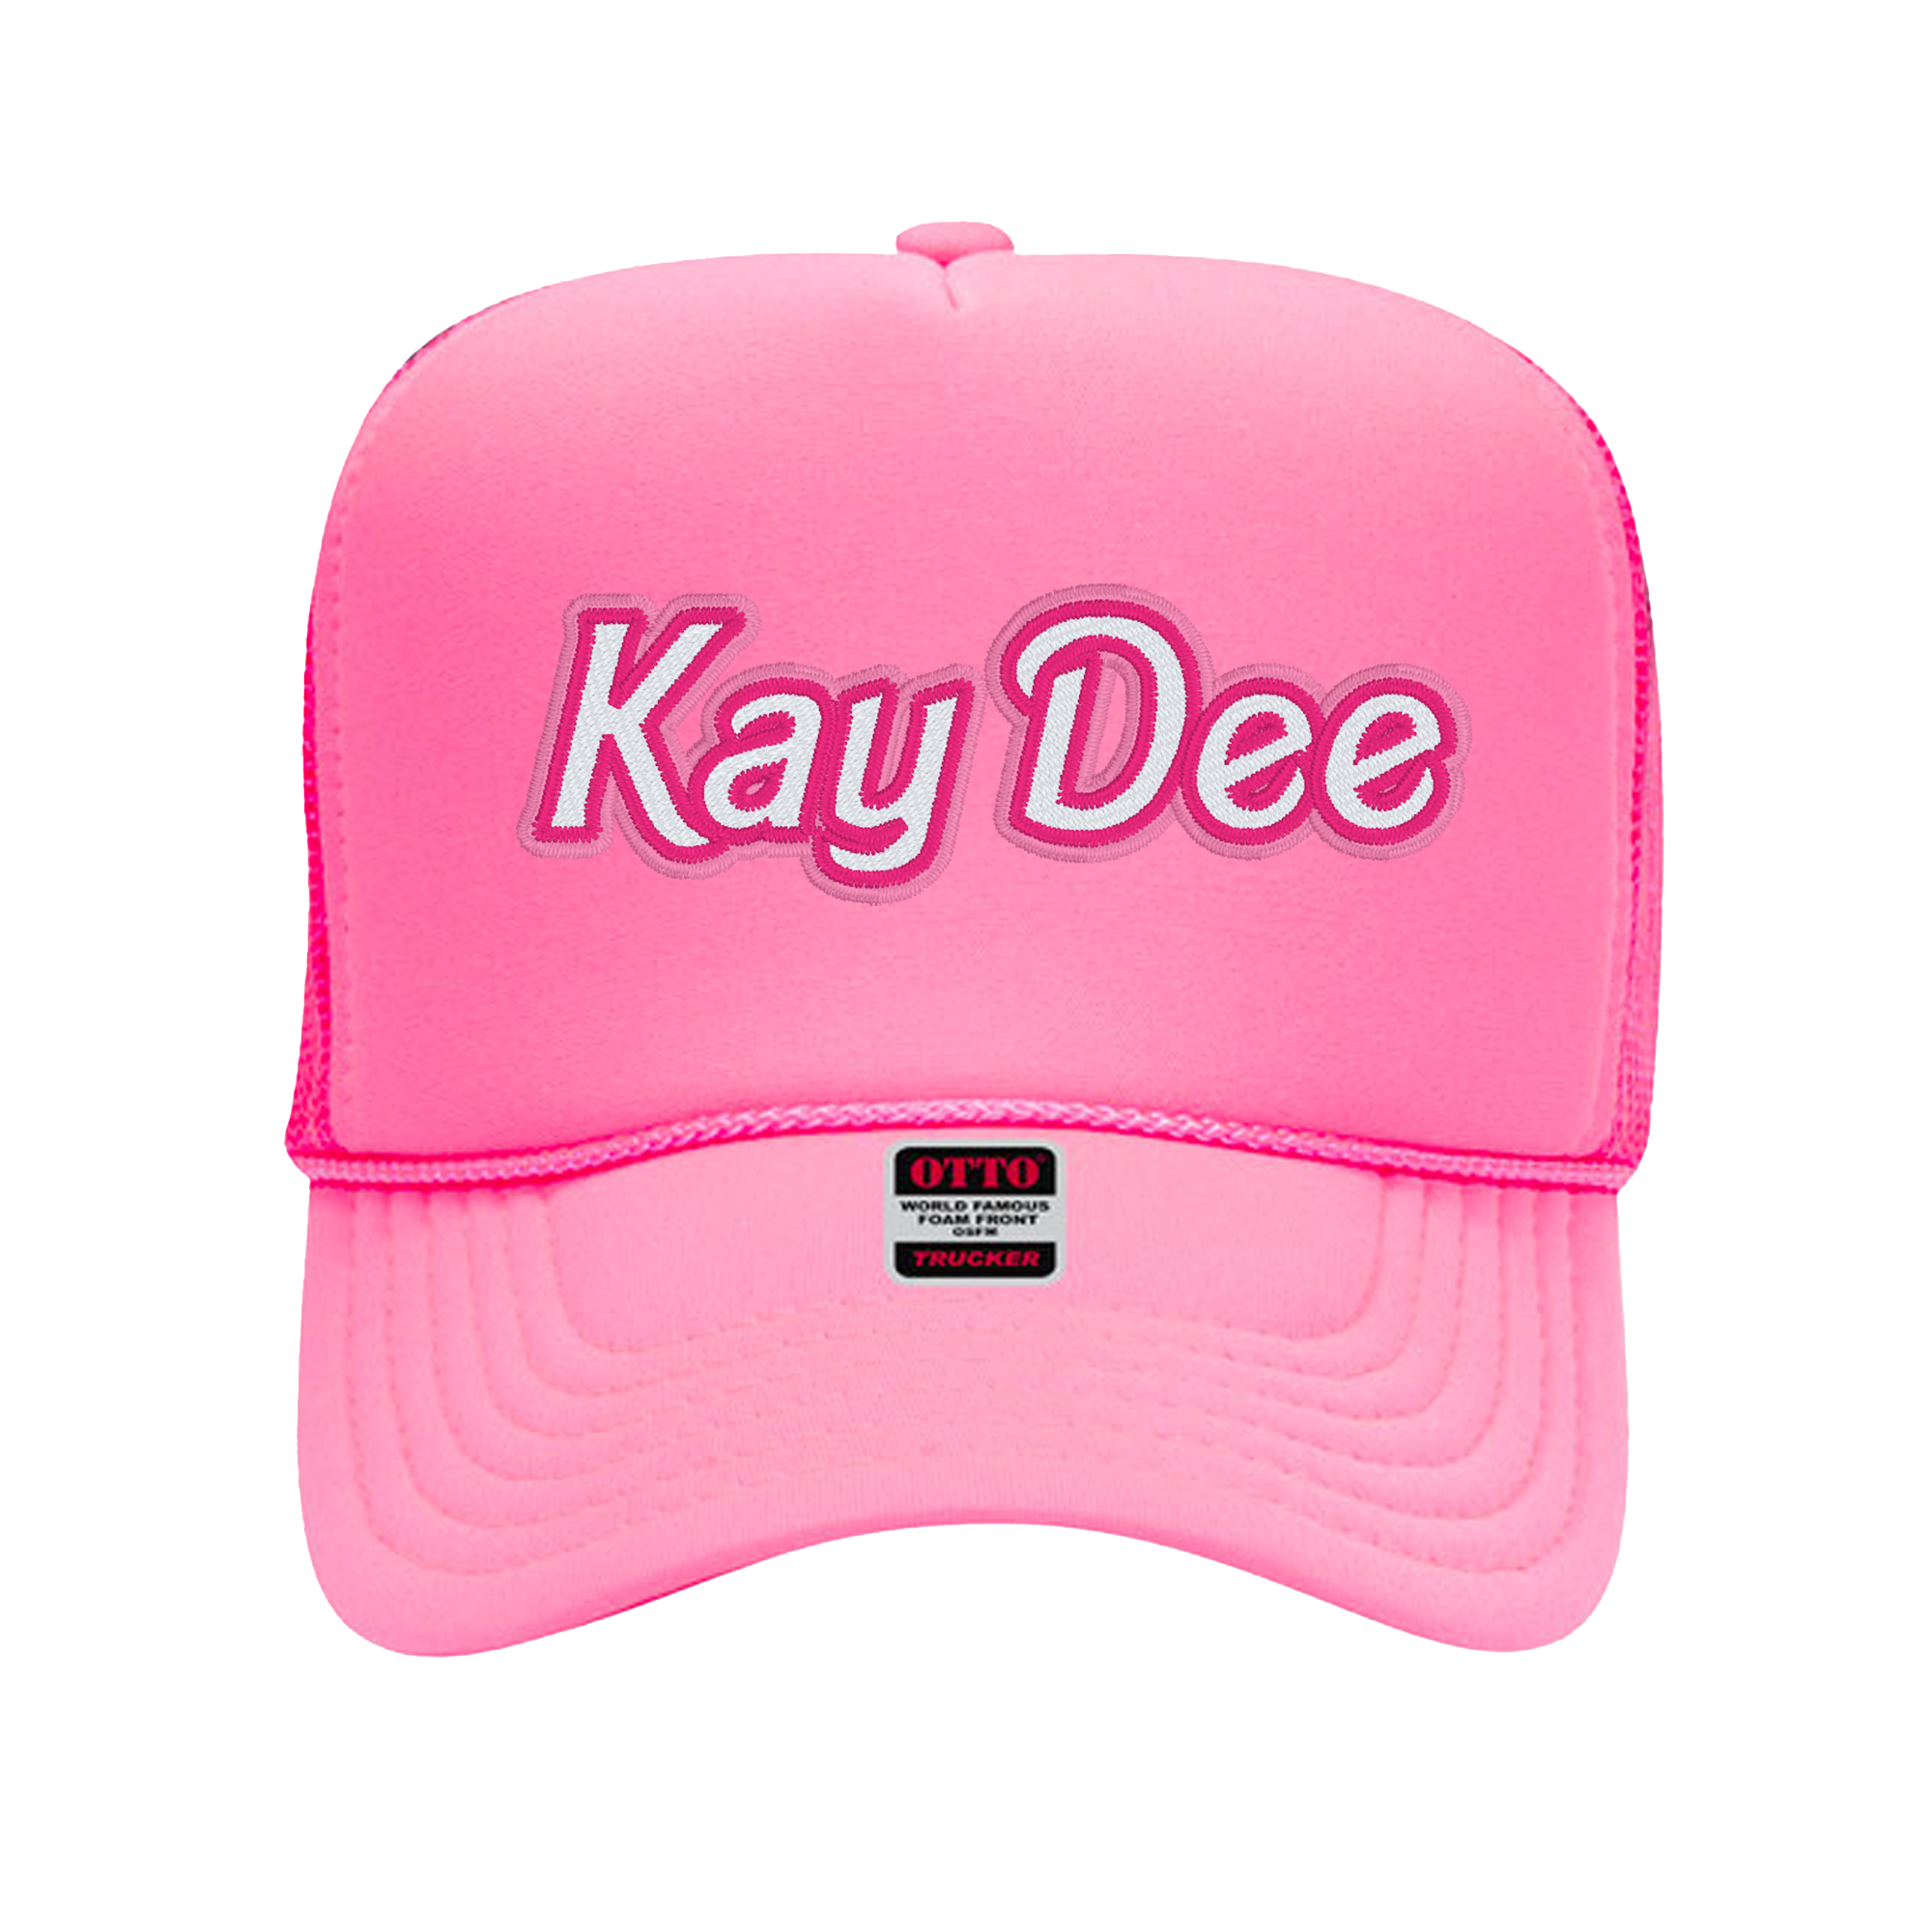 Kappa Delta Malibu Trucker Hat - Kay Dee